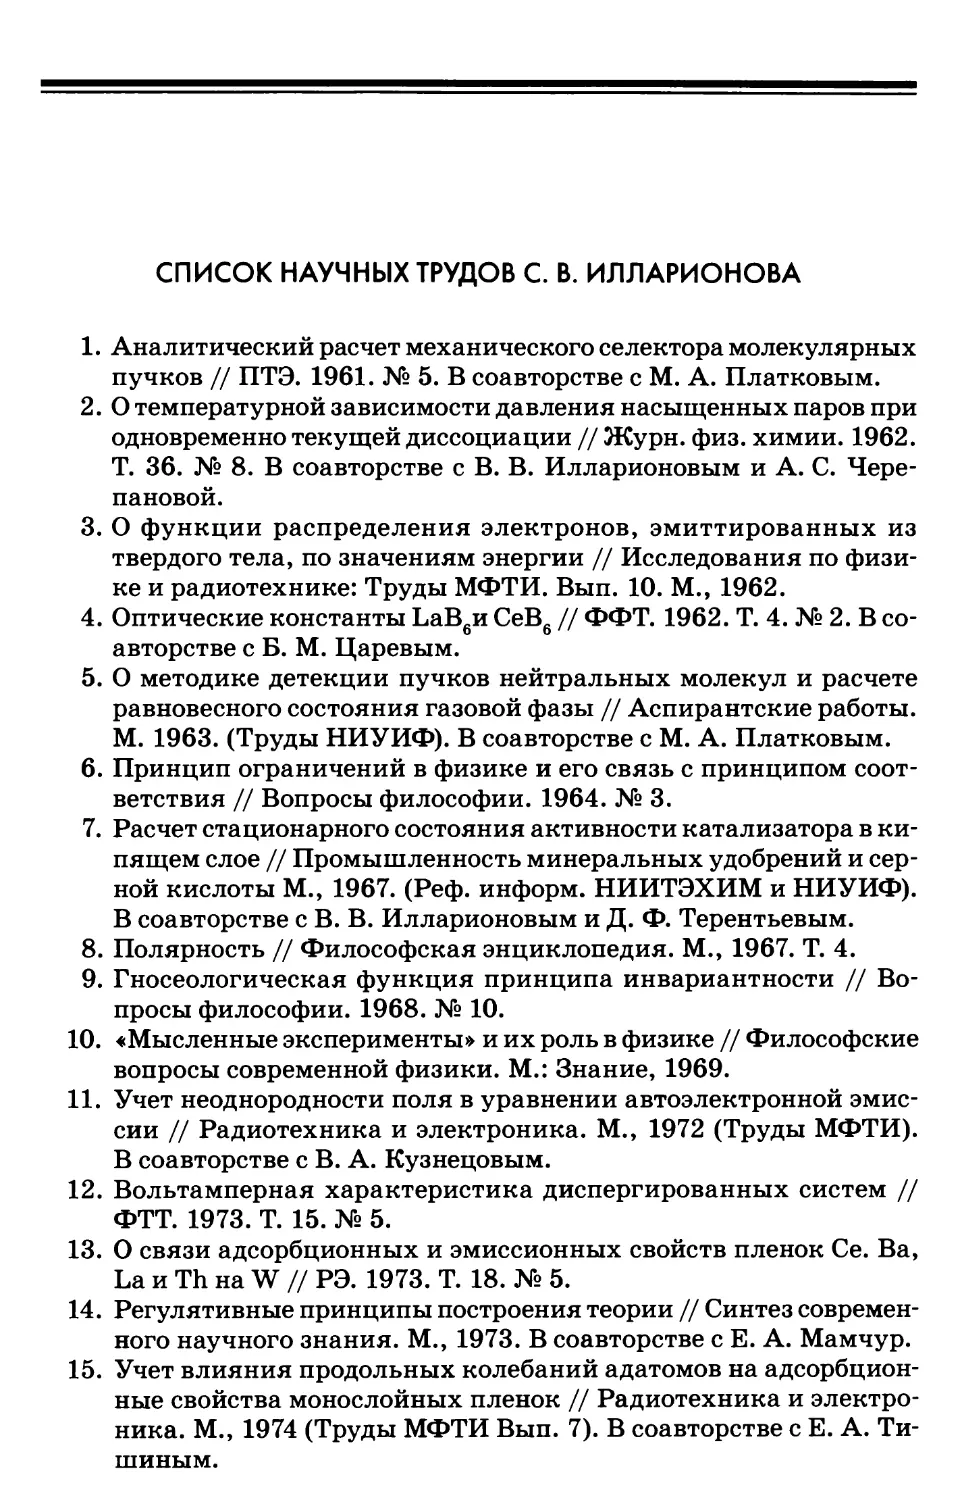 Список научных трудов Илларионова